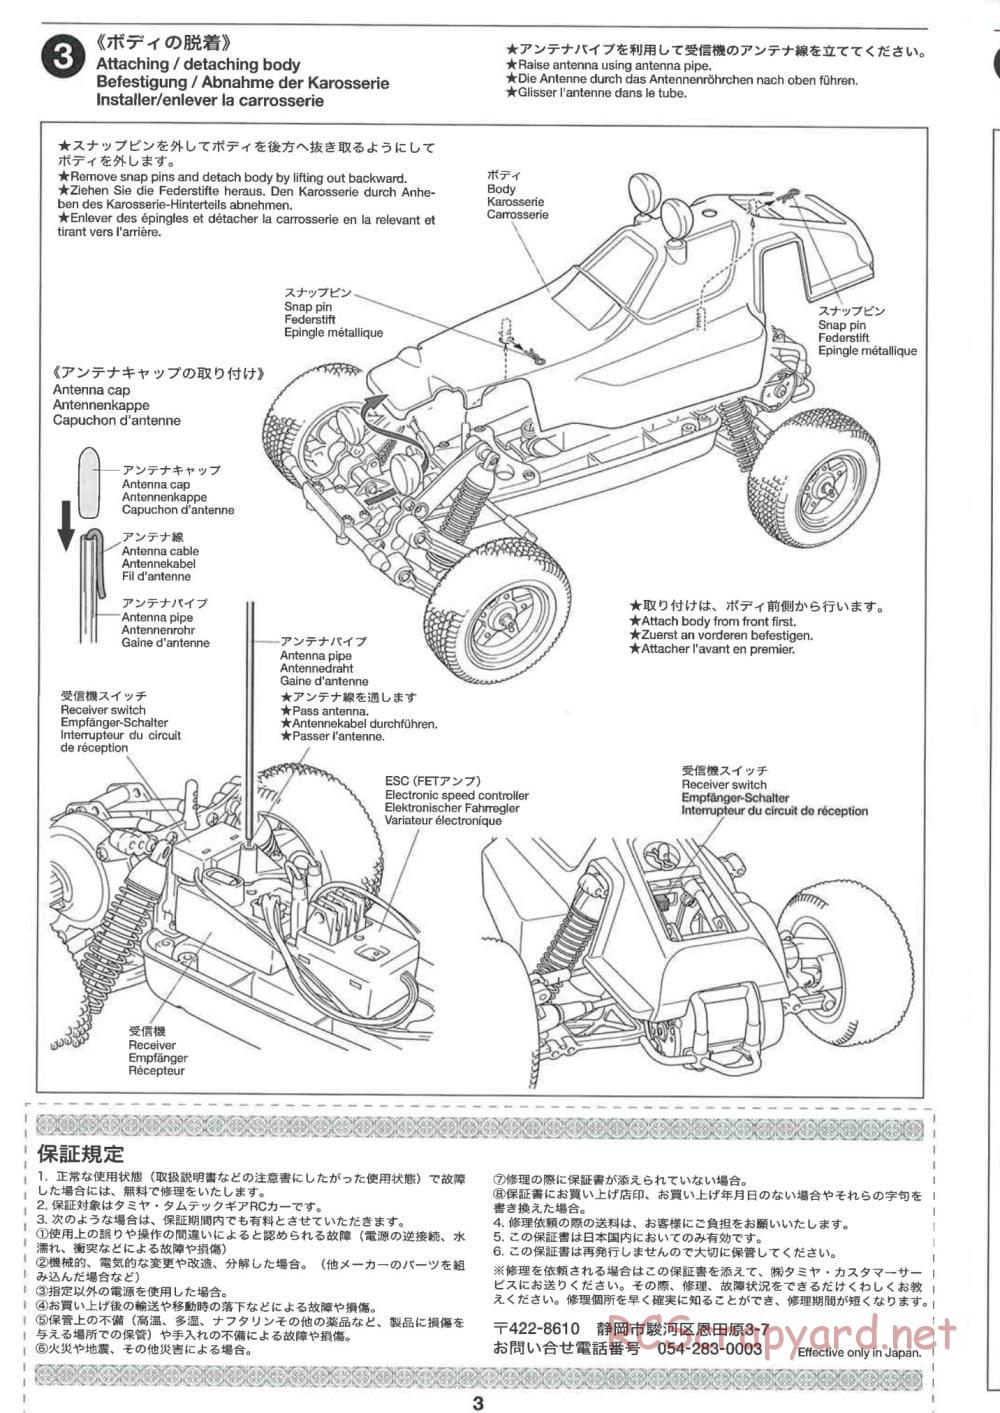 Tamiya - GB-02 Chassis - Manual - Page 3